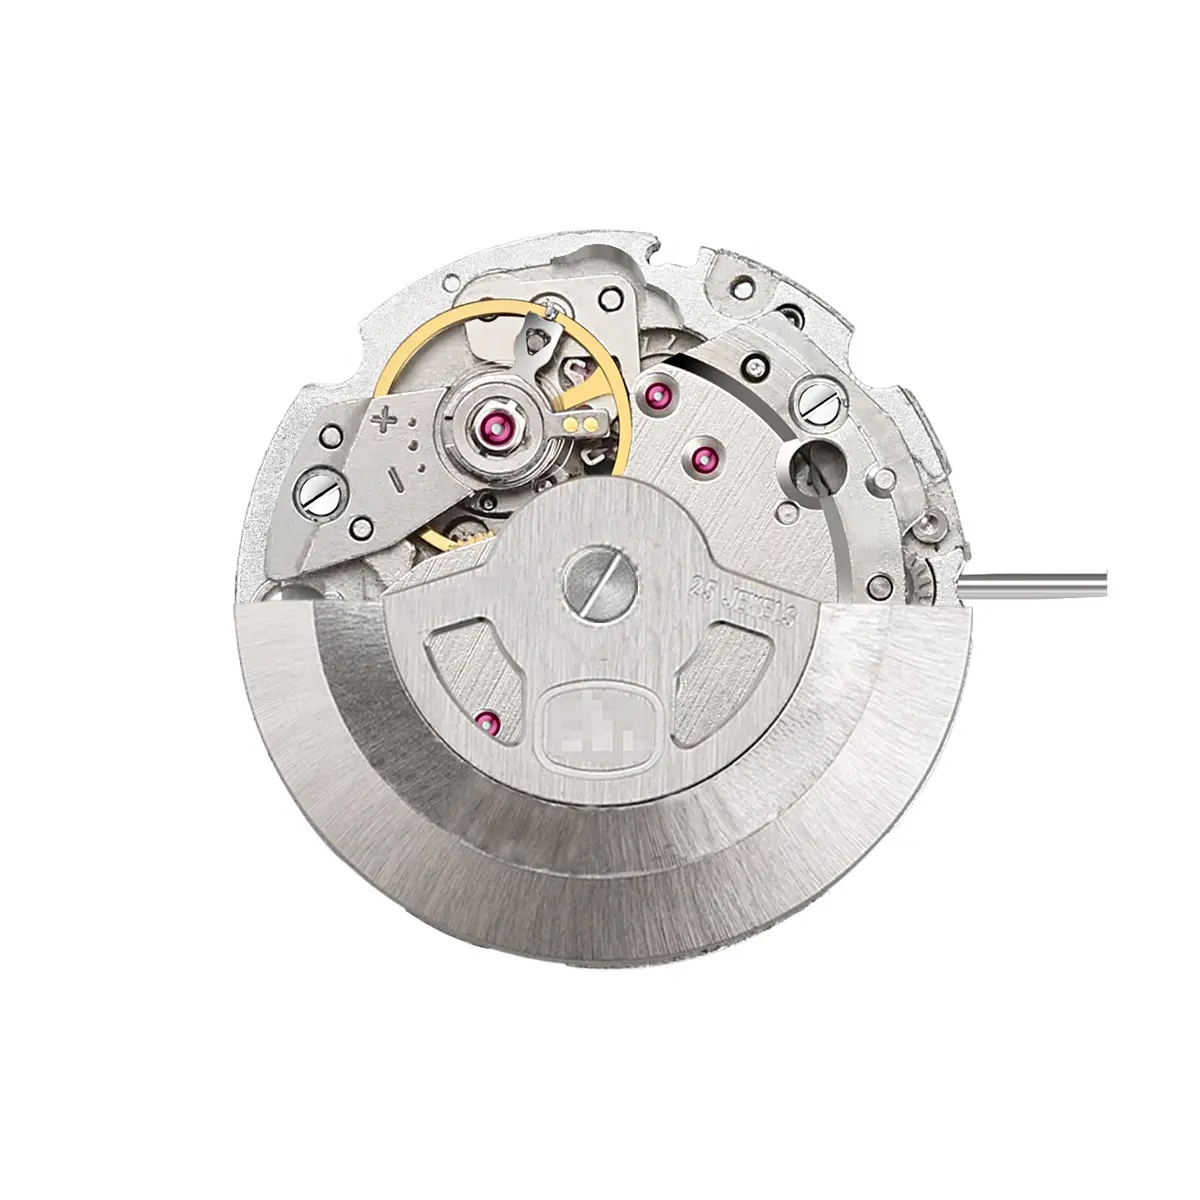 SANYIN-piezas y accesorios de reloj Winner para Rotor de movimiento Miyota 8N24, venta al por mayor de fábrica